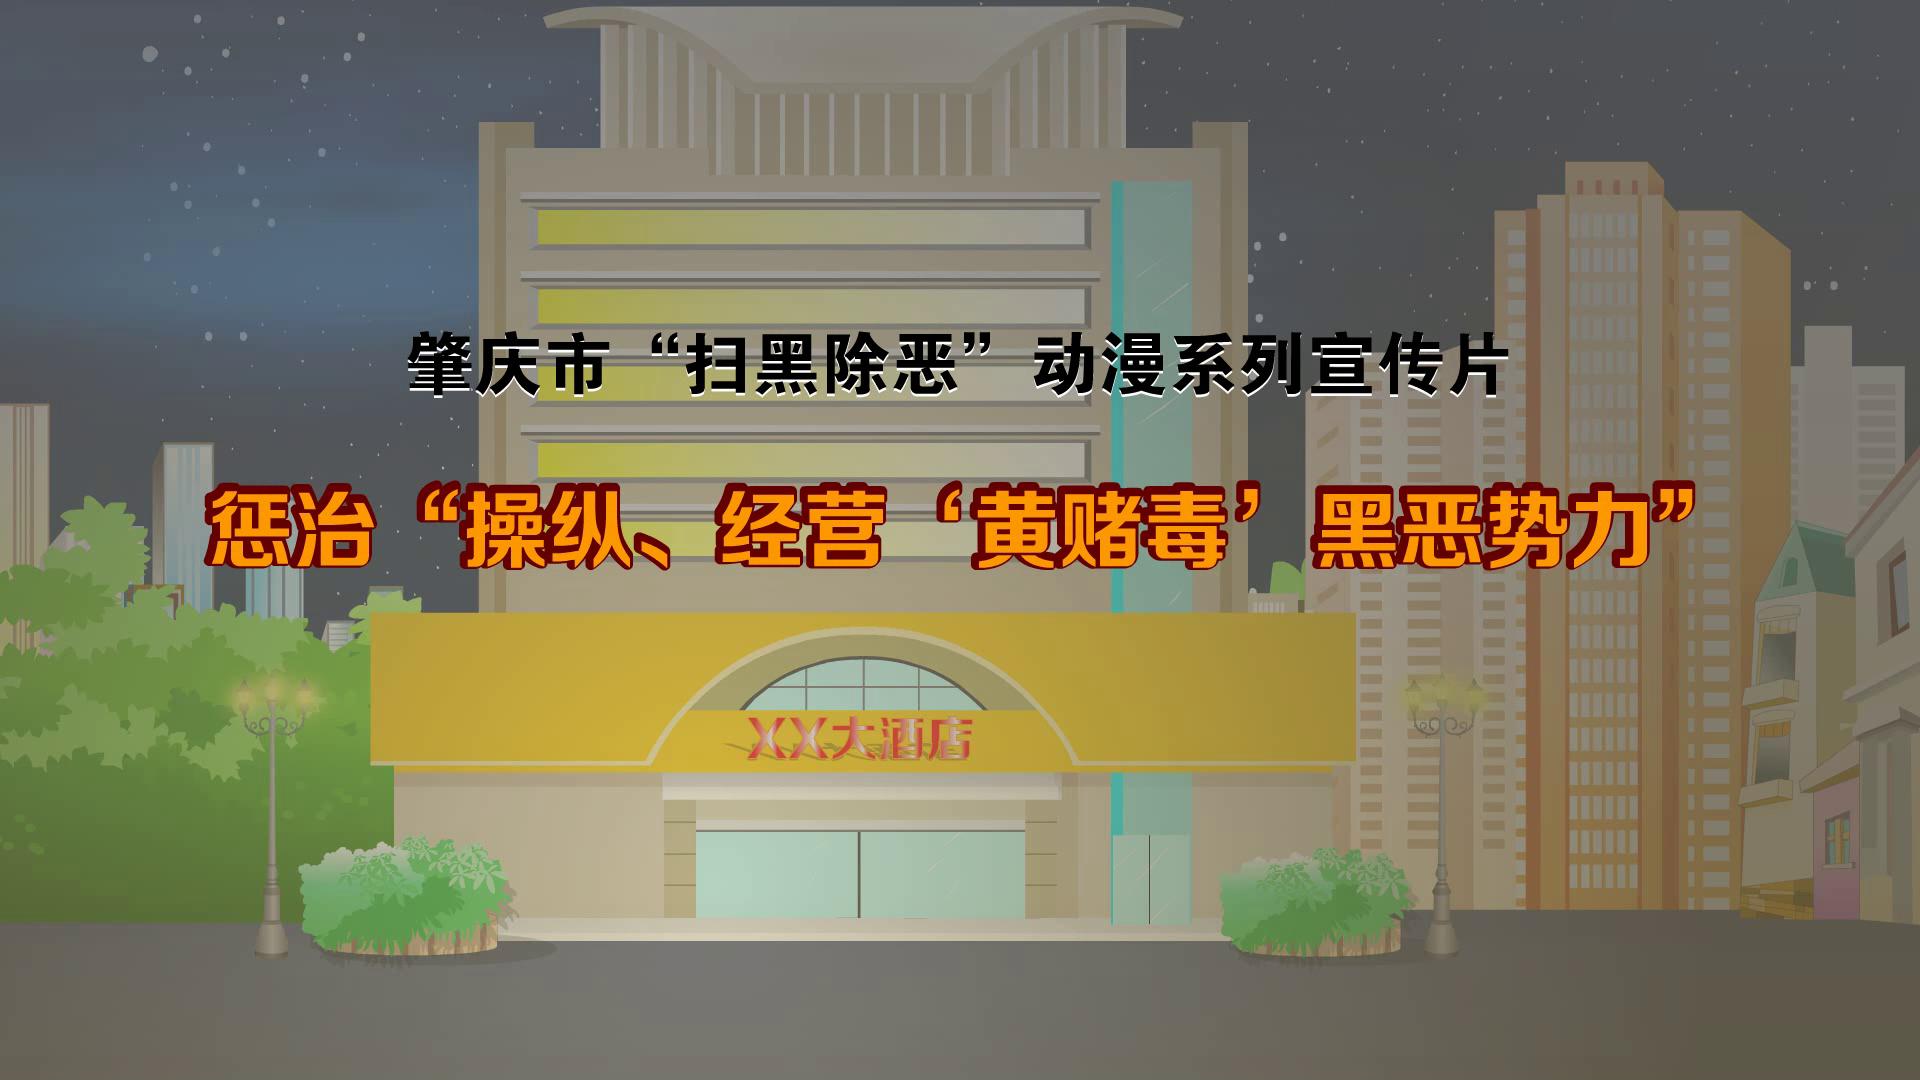 肇庆市扫黑除恶动漫系列宣传片——6.惩治“操纵、经营‘黄赌毒’黑恶势力”